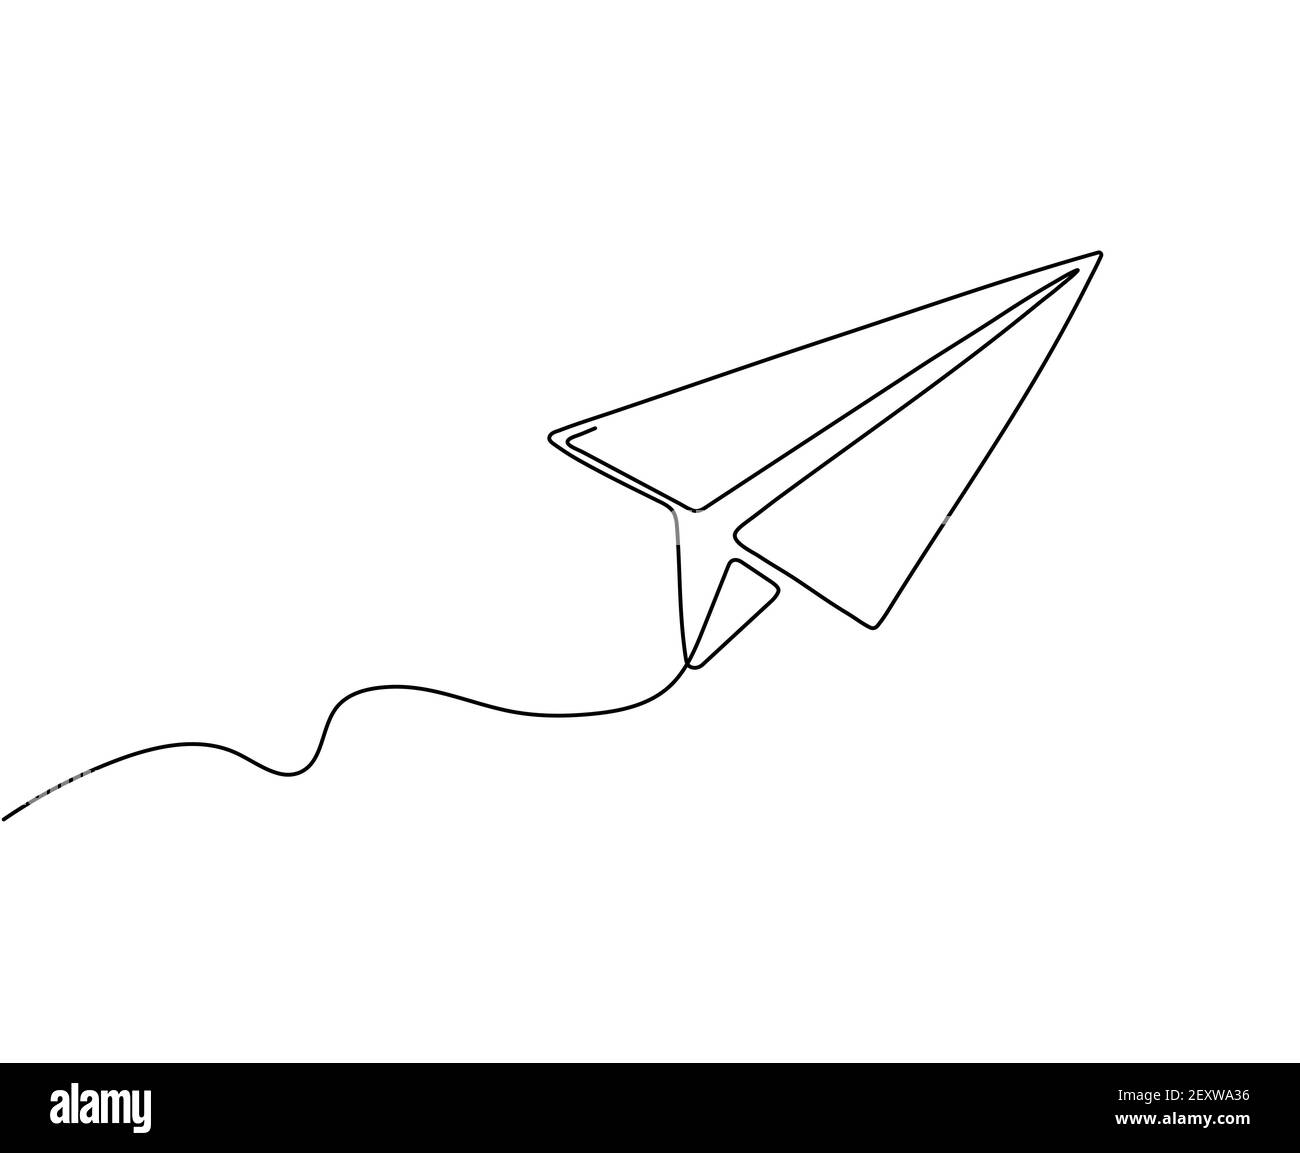 Piano carta a una riga. Astratto di volo di fondo aereo. Disegno a profilo continuo di origami Aircraft. Segnale di viaggio isolato dal vettore. Illustrazione disegno aereo, profilo aereo di volo Illustrazione Vettoriale